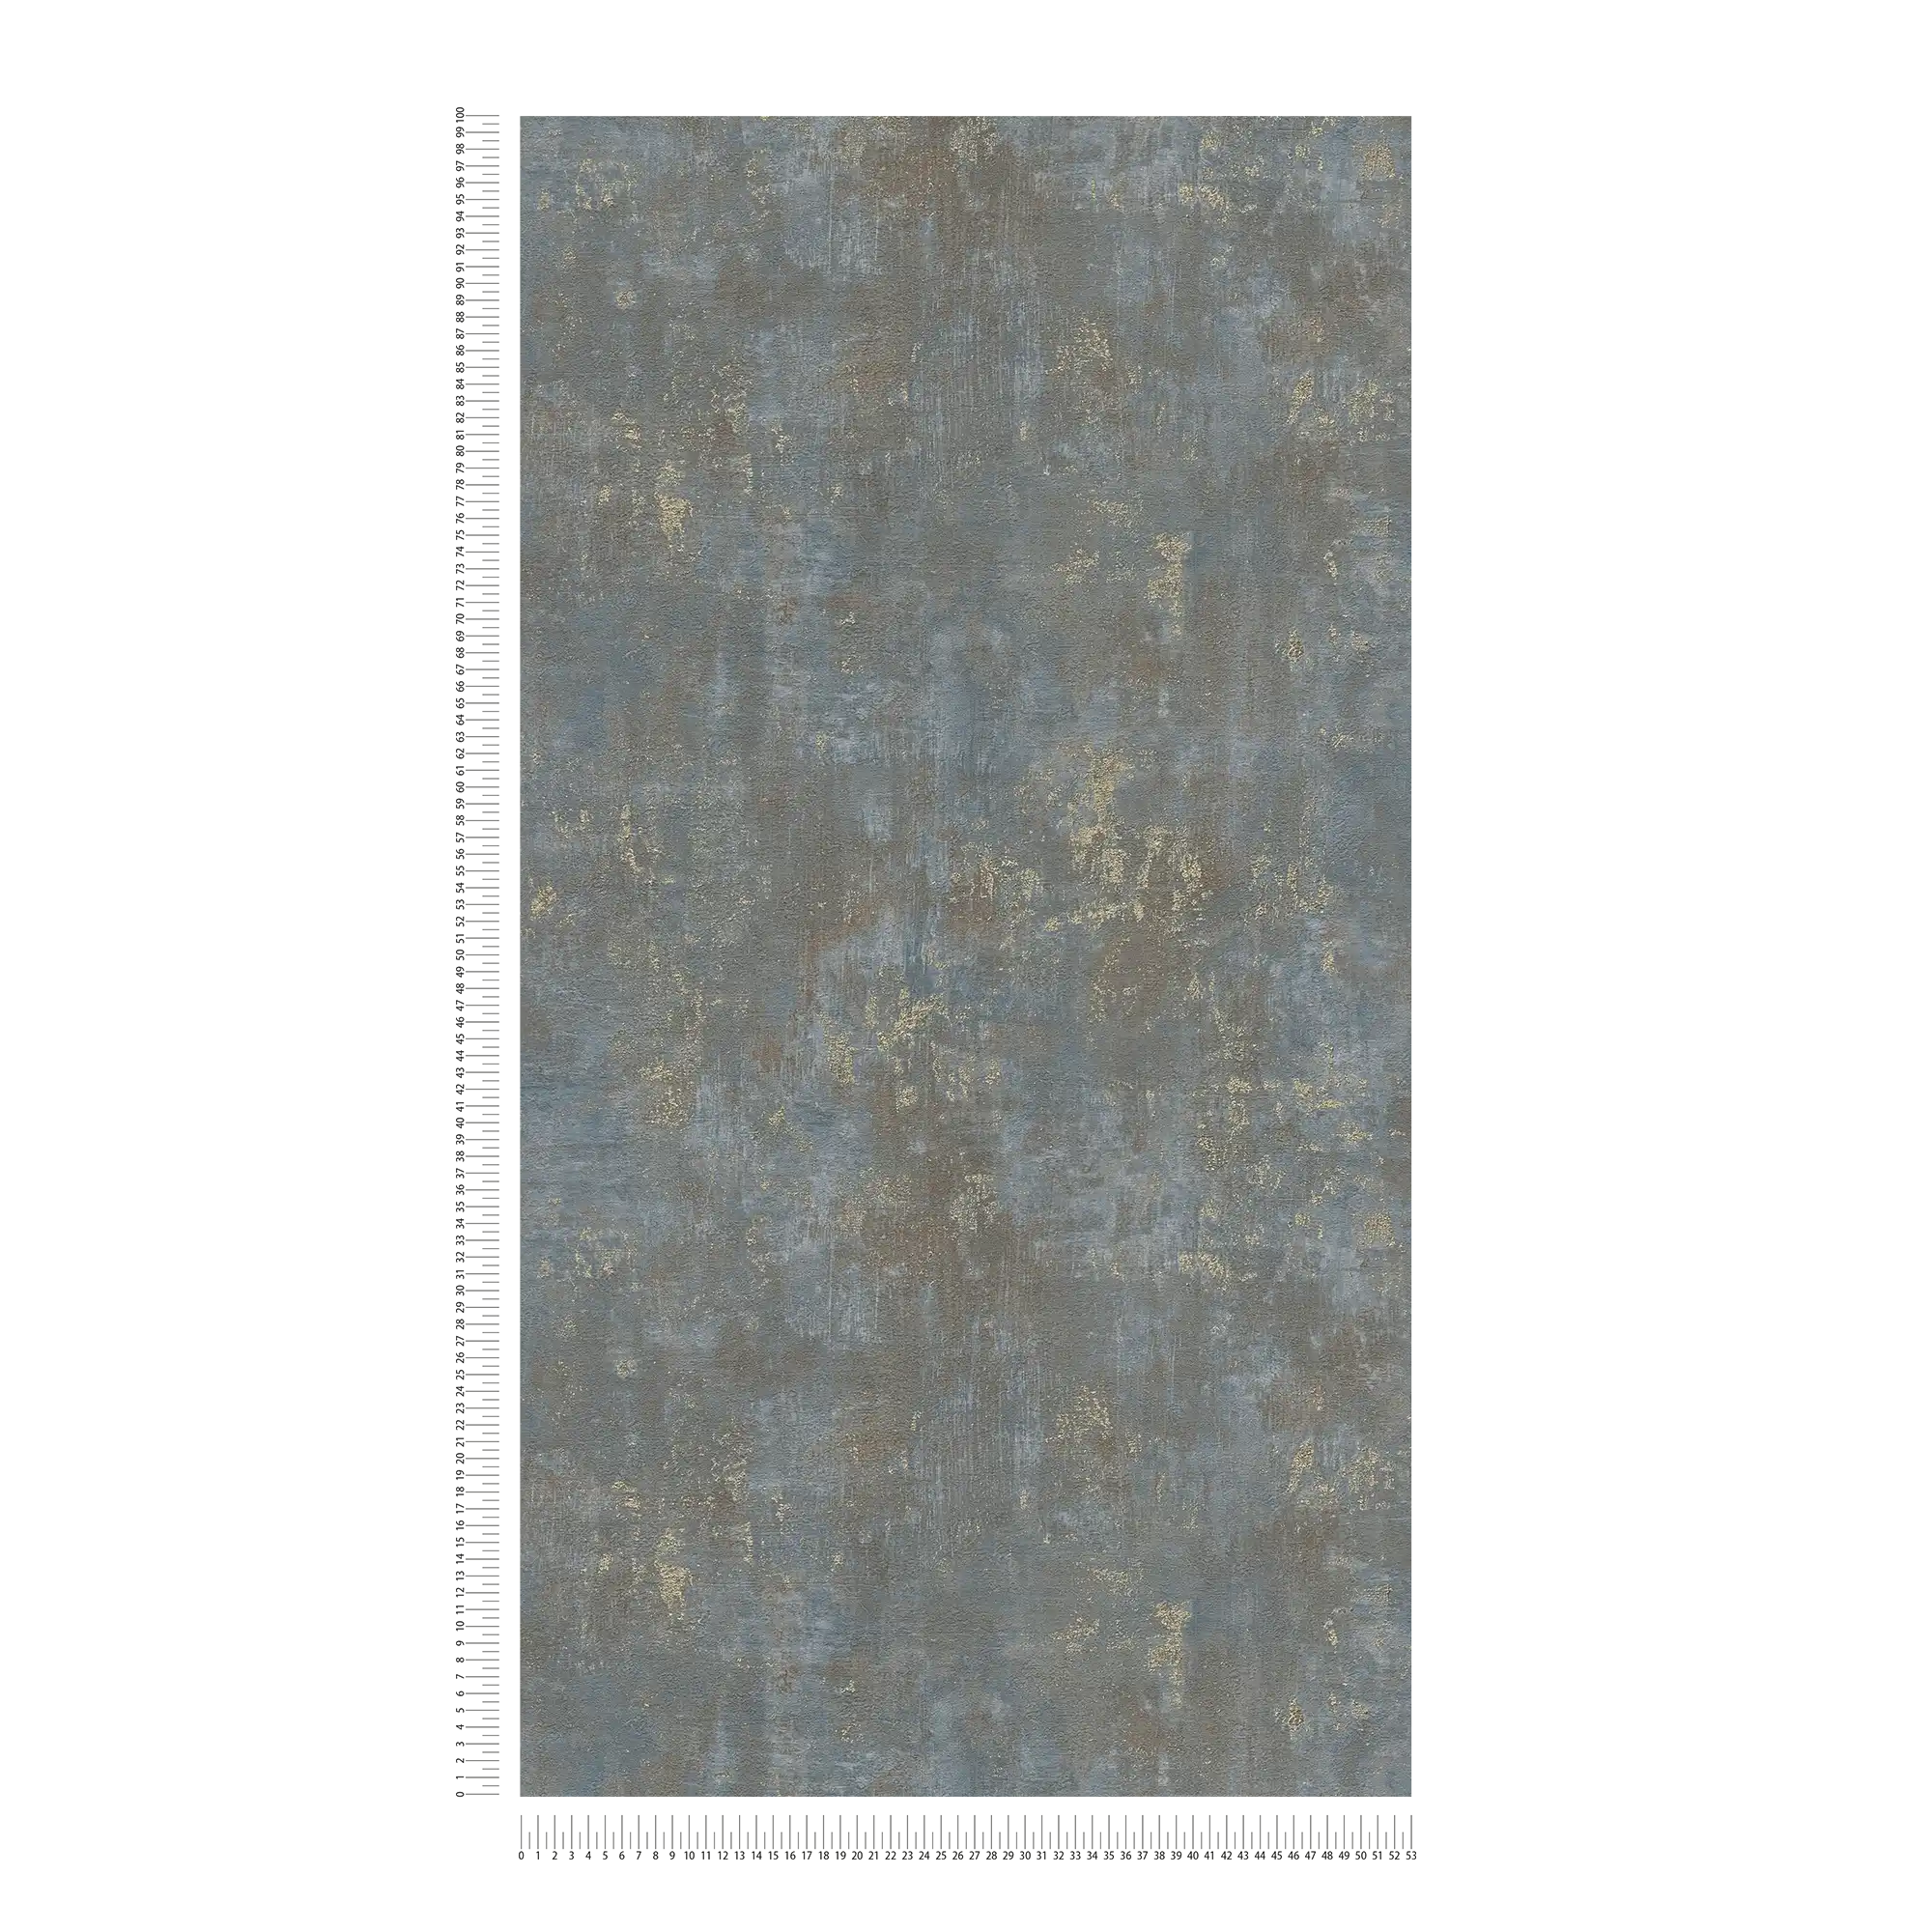             Roestkleurig behang met metallic accenten - bruin, blauw, goud
        